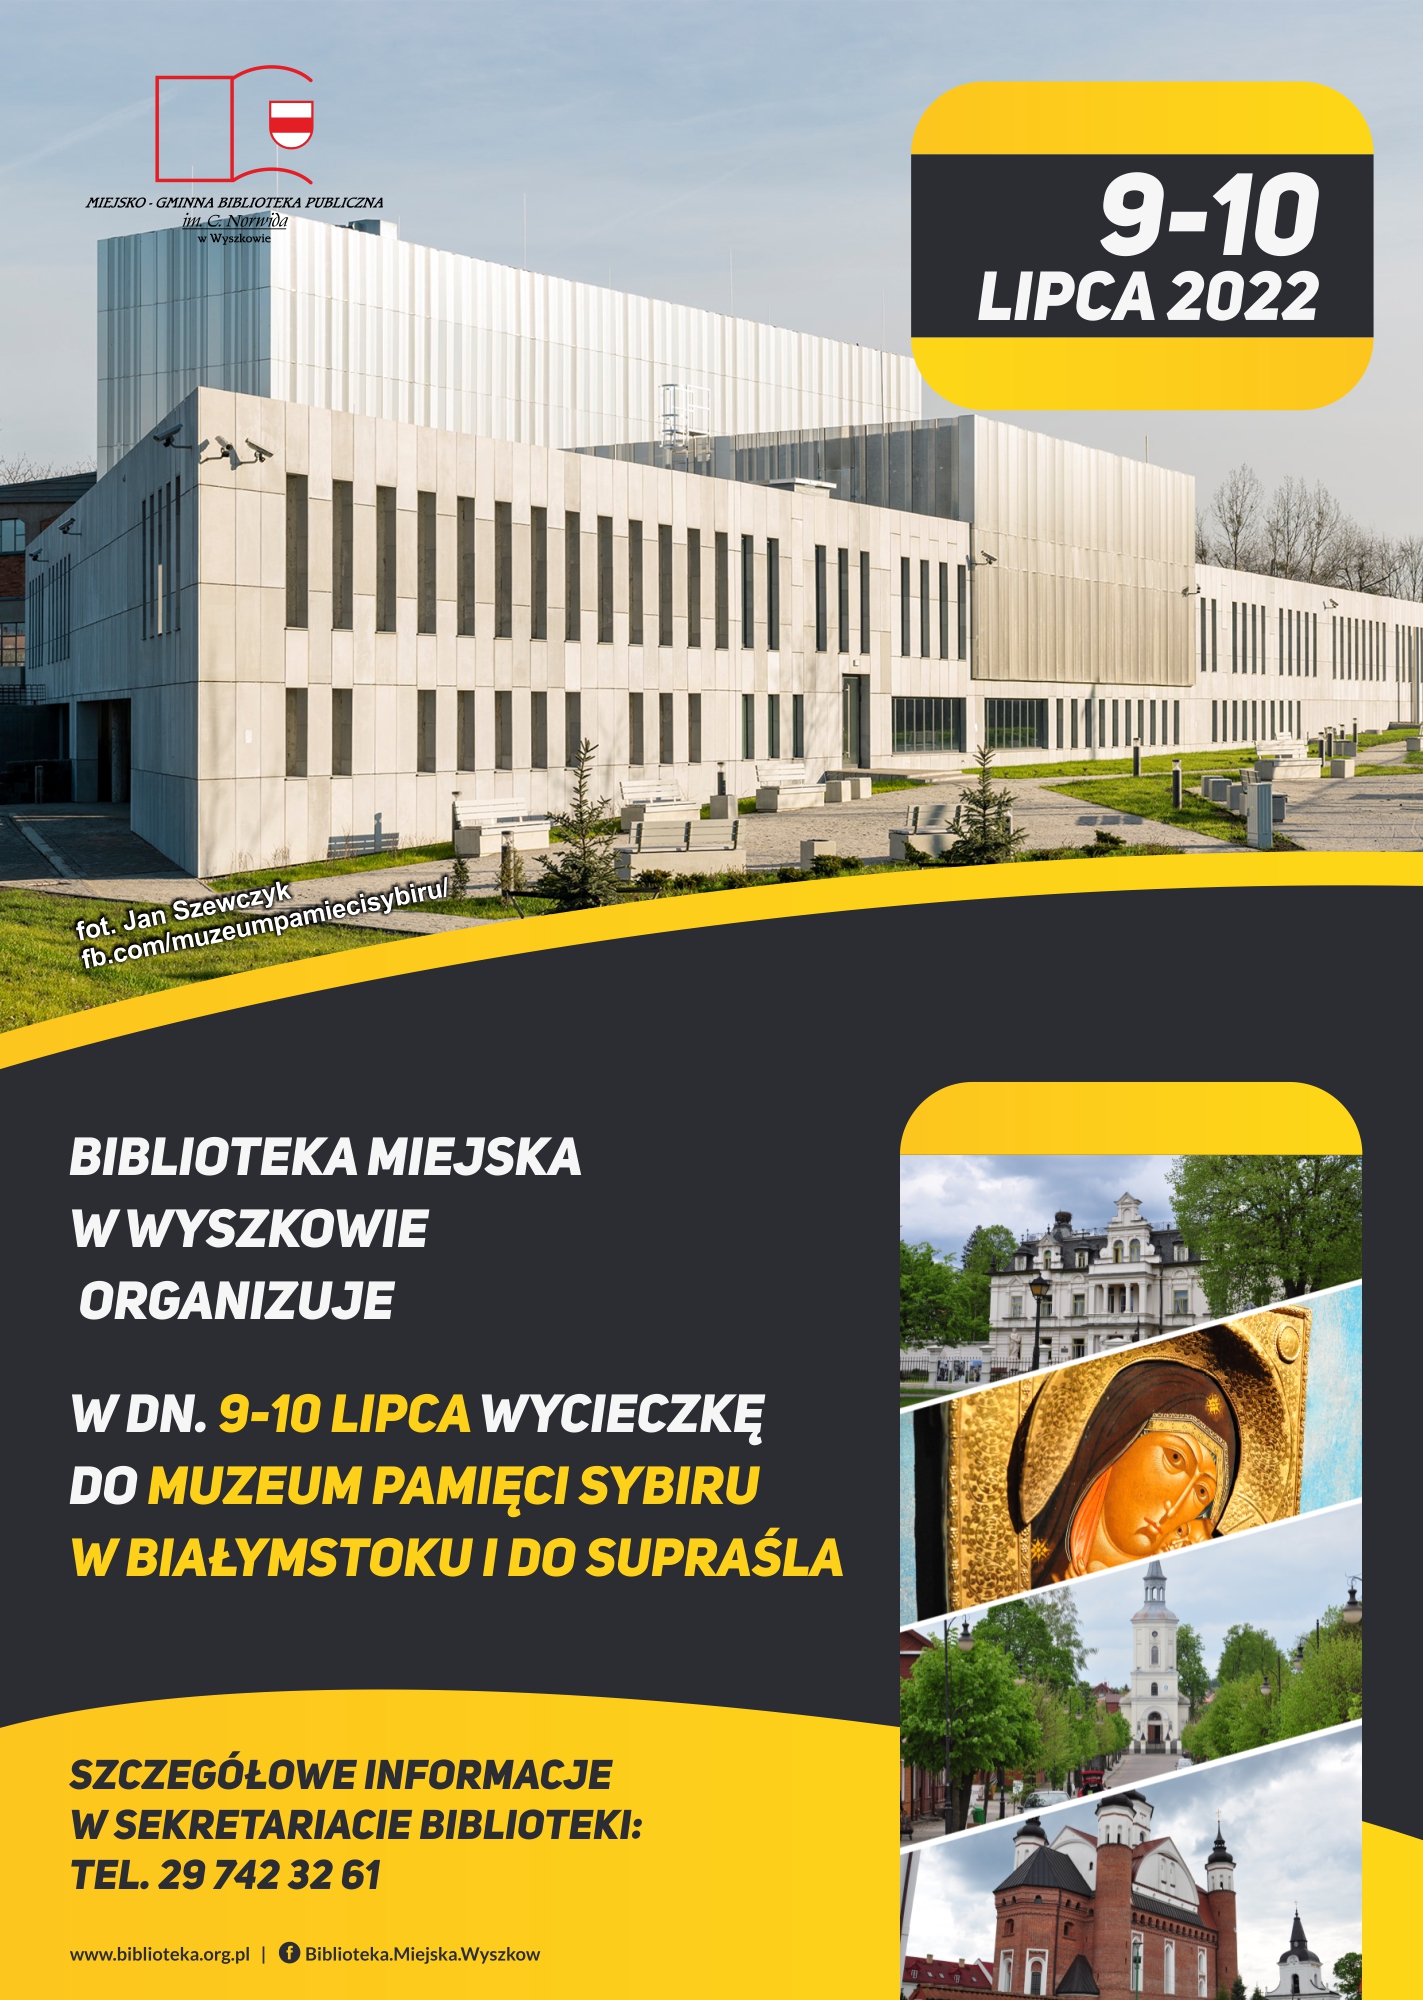 Biblioteka Miejska w Wyszkowie  organizuje w dn. 9-10 lipca wycieczkę  do Muzeum Pamięci Sybiru w Białymstoku i do Supraśla.  Szczegółowe informacje w sekretariacie biblioteki: 29 742 32 61